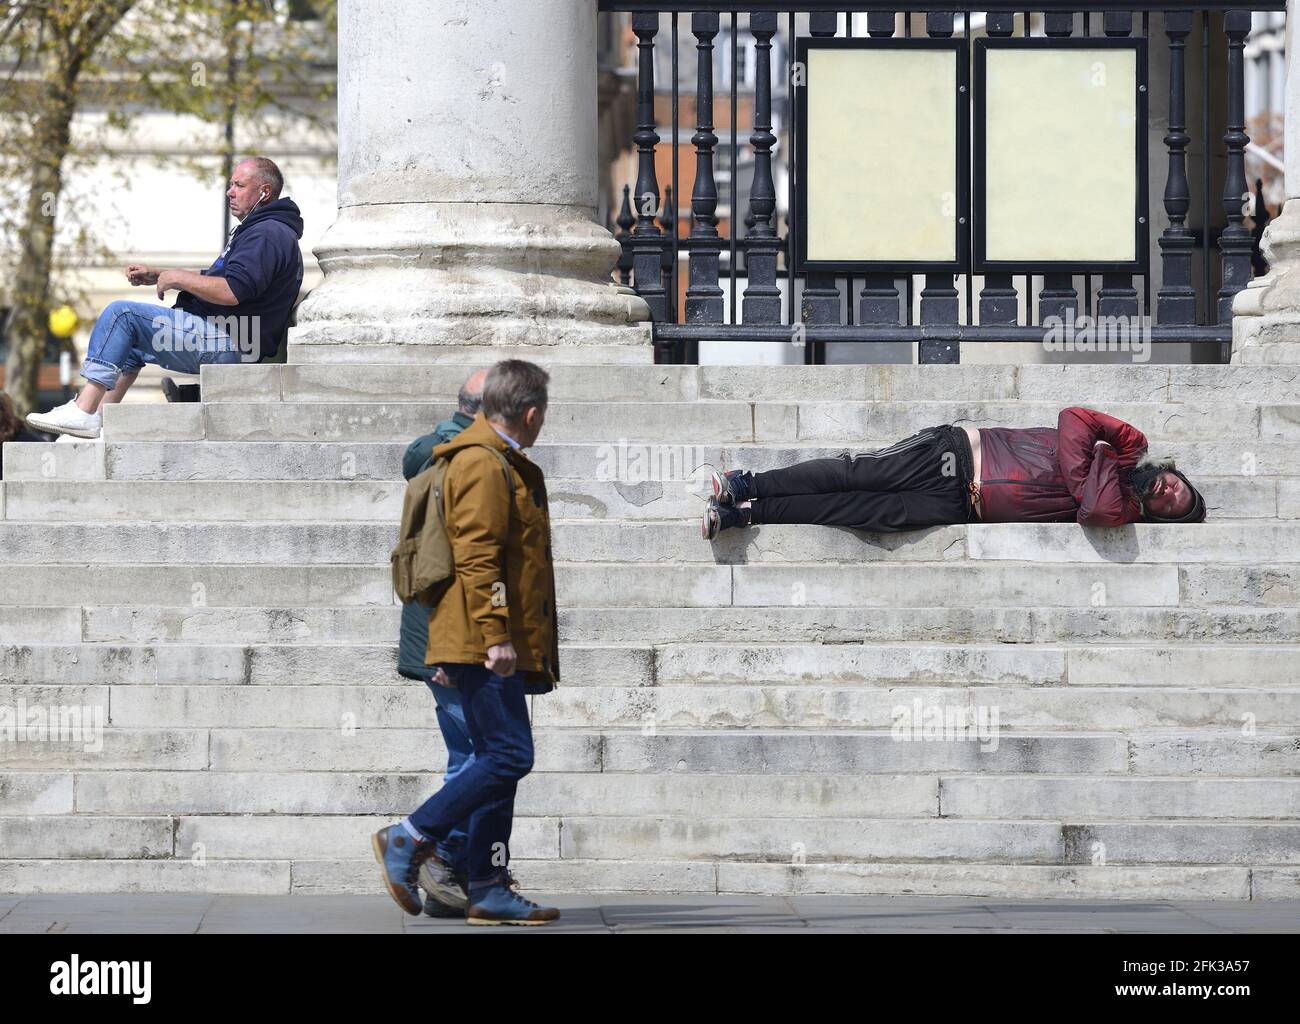 Londra, Inghilterra, Regno Unito. L'uomo addormentò sulle scale di San Martino nella Chiesa dei campi, Trafalgar Square - persone che camminano oltre Foto Stock